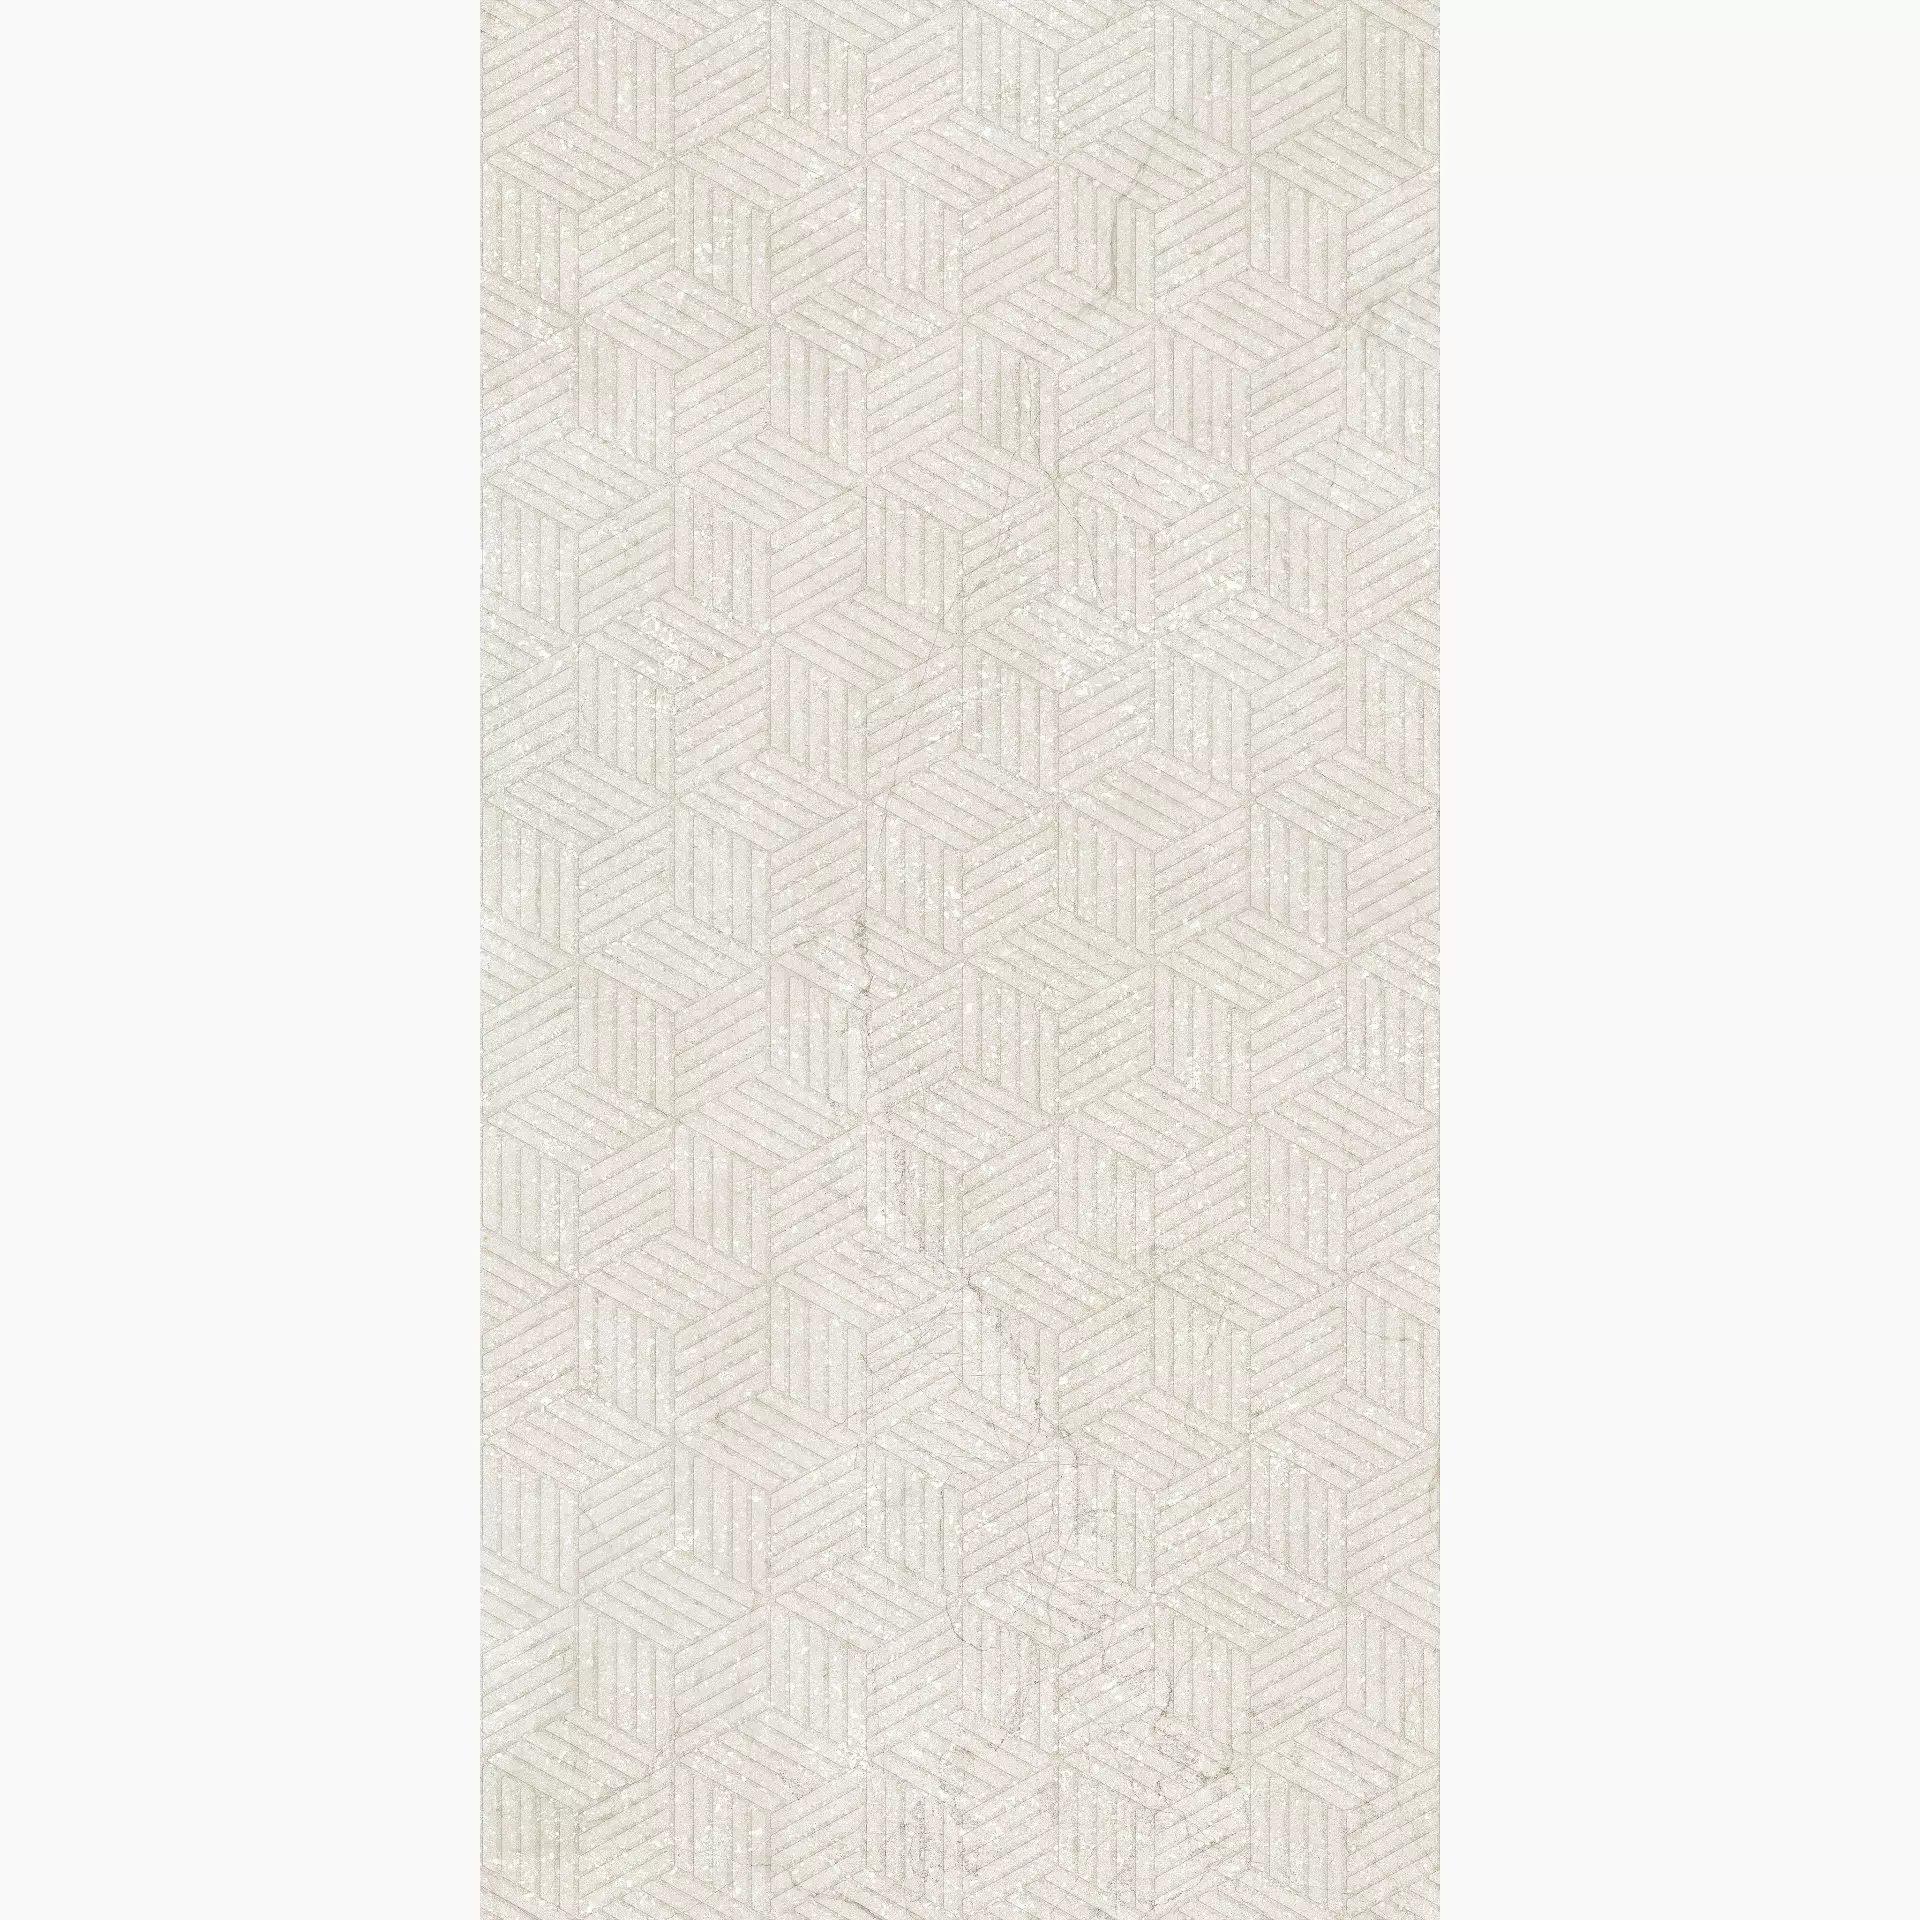 Florim Stone Life Cotton Naturale – Matt Cotton 779339 matt natur 60x120cm Dekor Cubes rektifiziert 6mm